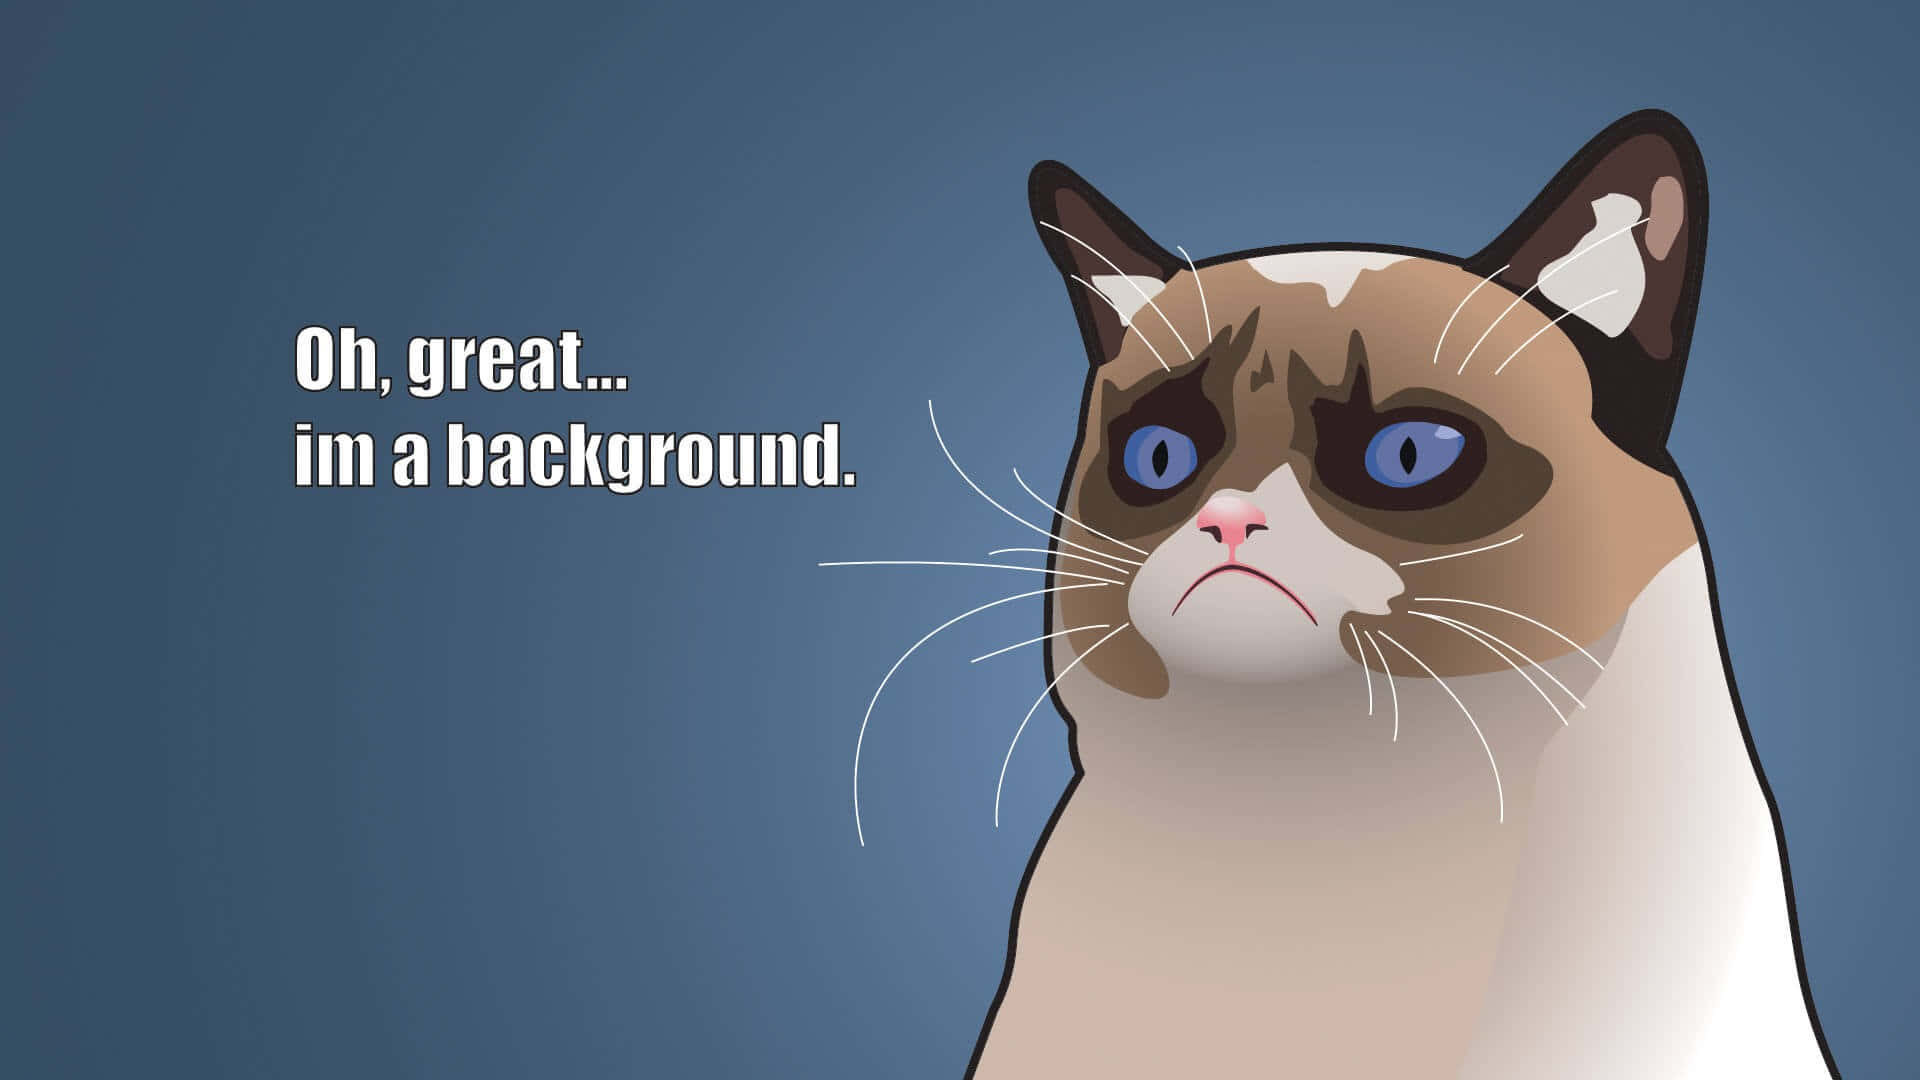 Grumpycat Tapet, Grumpy Cat Tapet, Grumpy Cat Tapet, Grumpy Cat Tapet, Griniga Katt Tapet